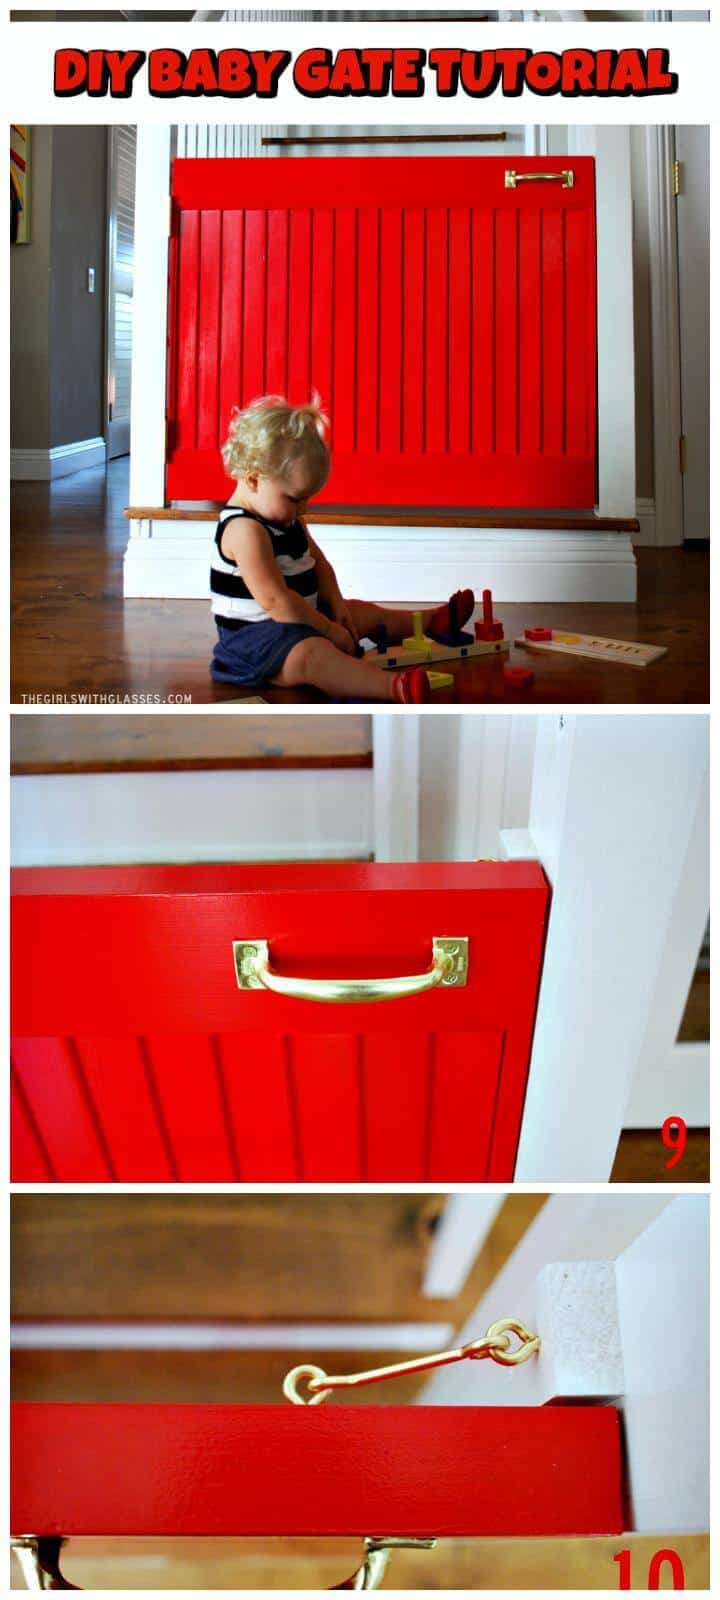 puerta de bebé pequeña puerta roja fácil